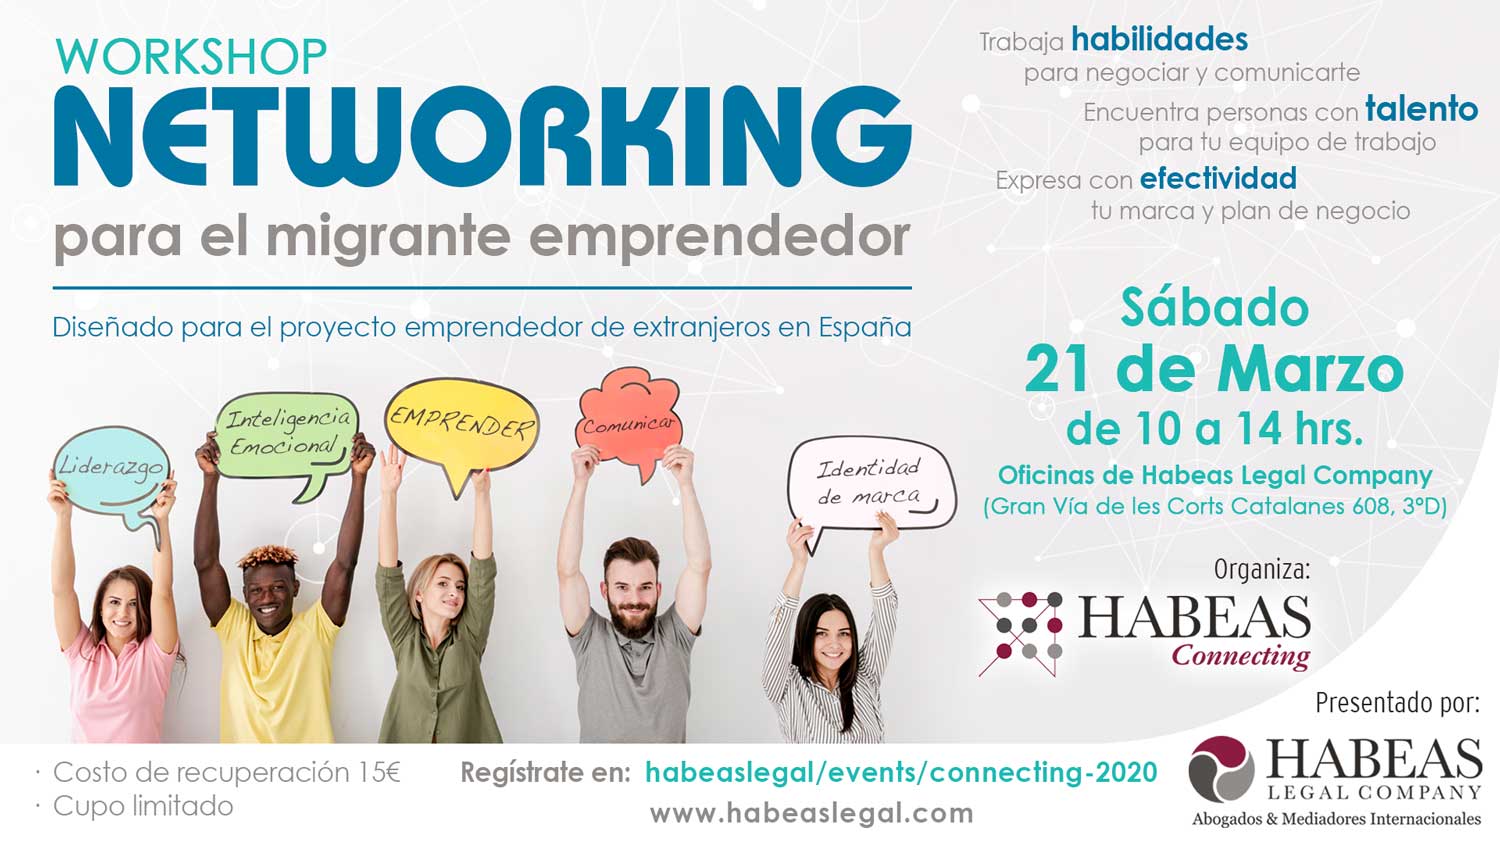 Workshop Habilidades Habeas Connecting FB evento C - Inscripción workshop "NETWORKING para el migrante emprendedor"